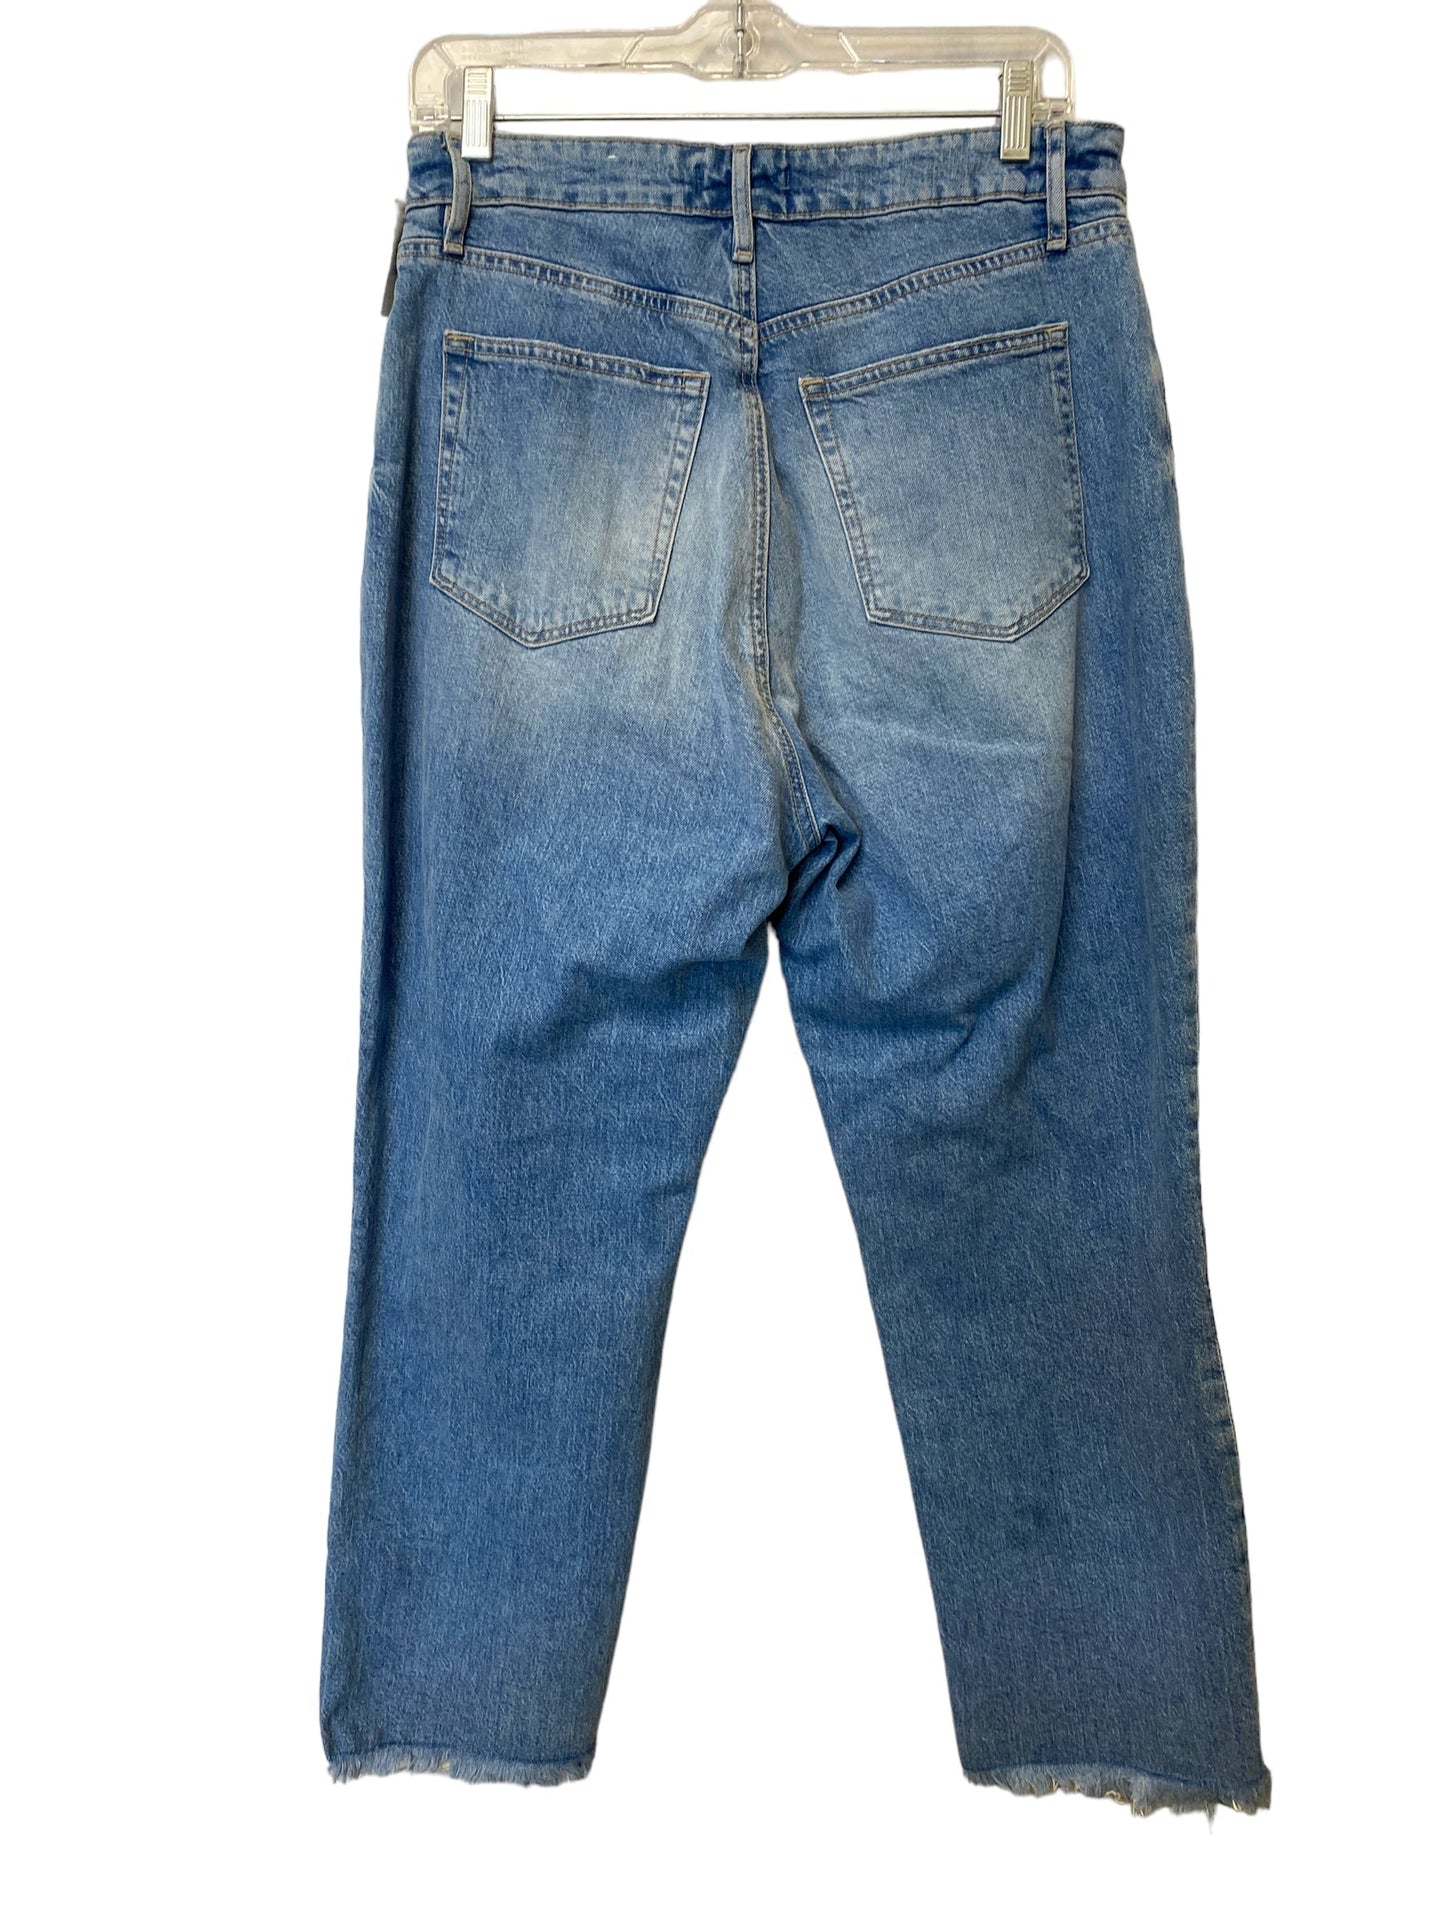 Jeans Cropped By Loft  Size: 6